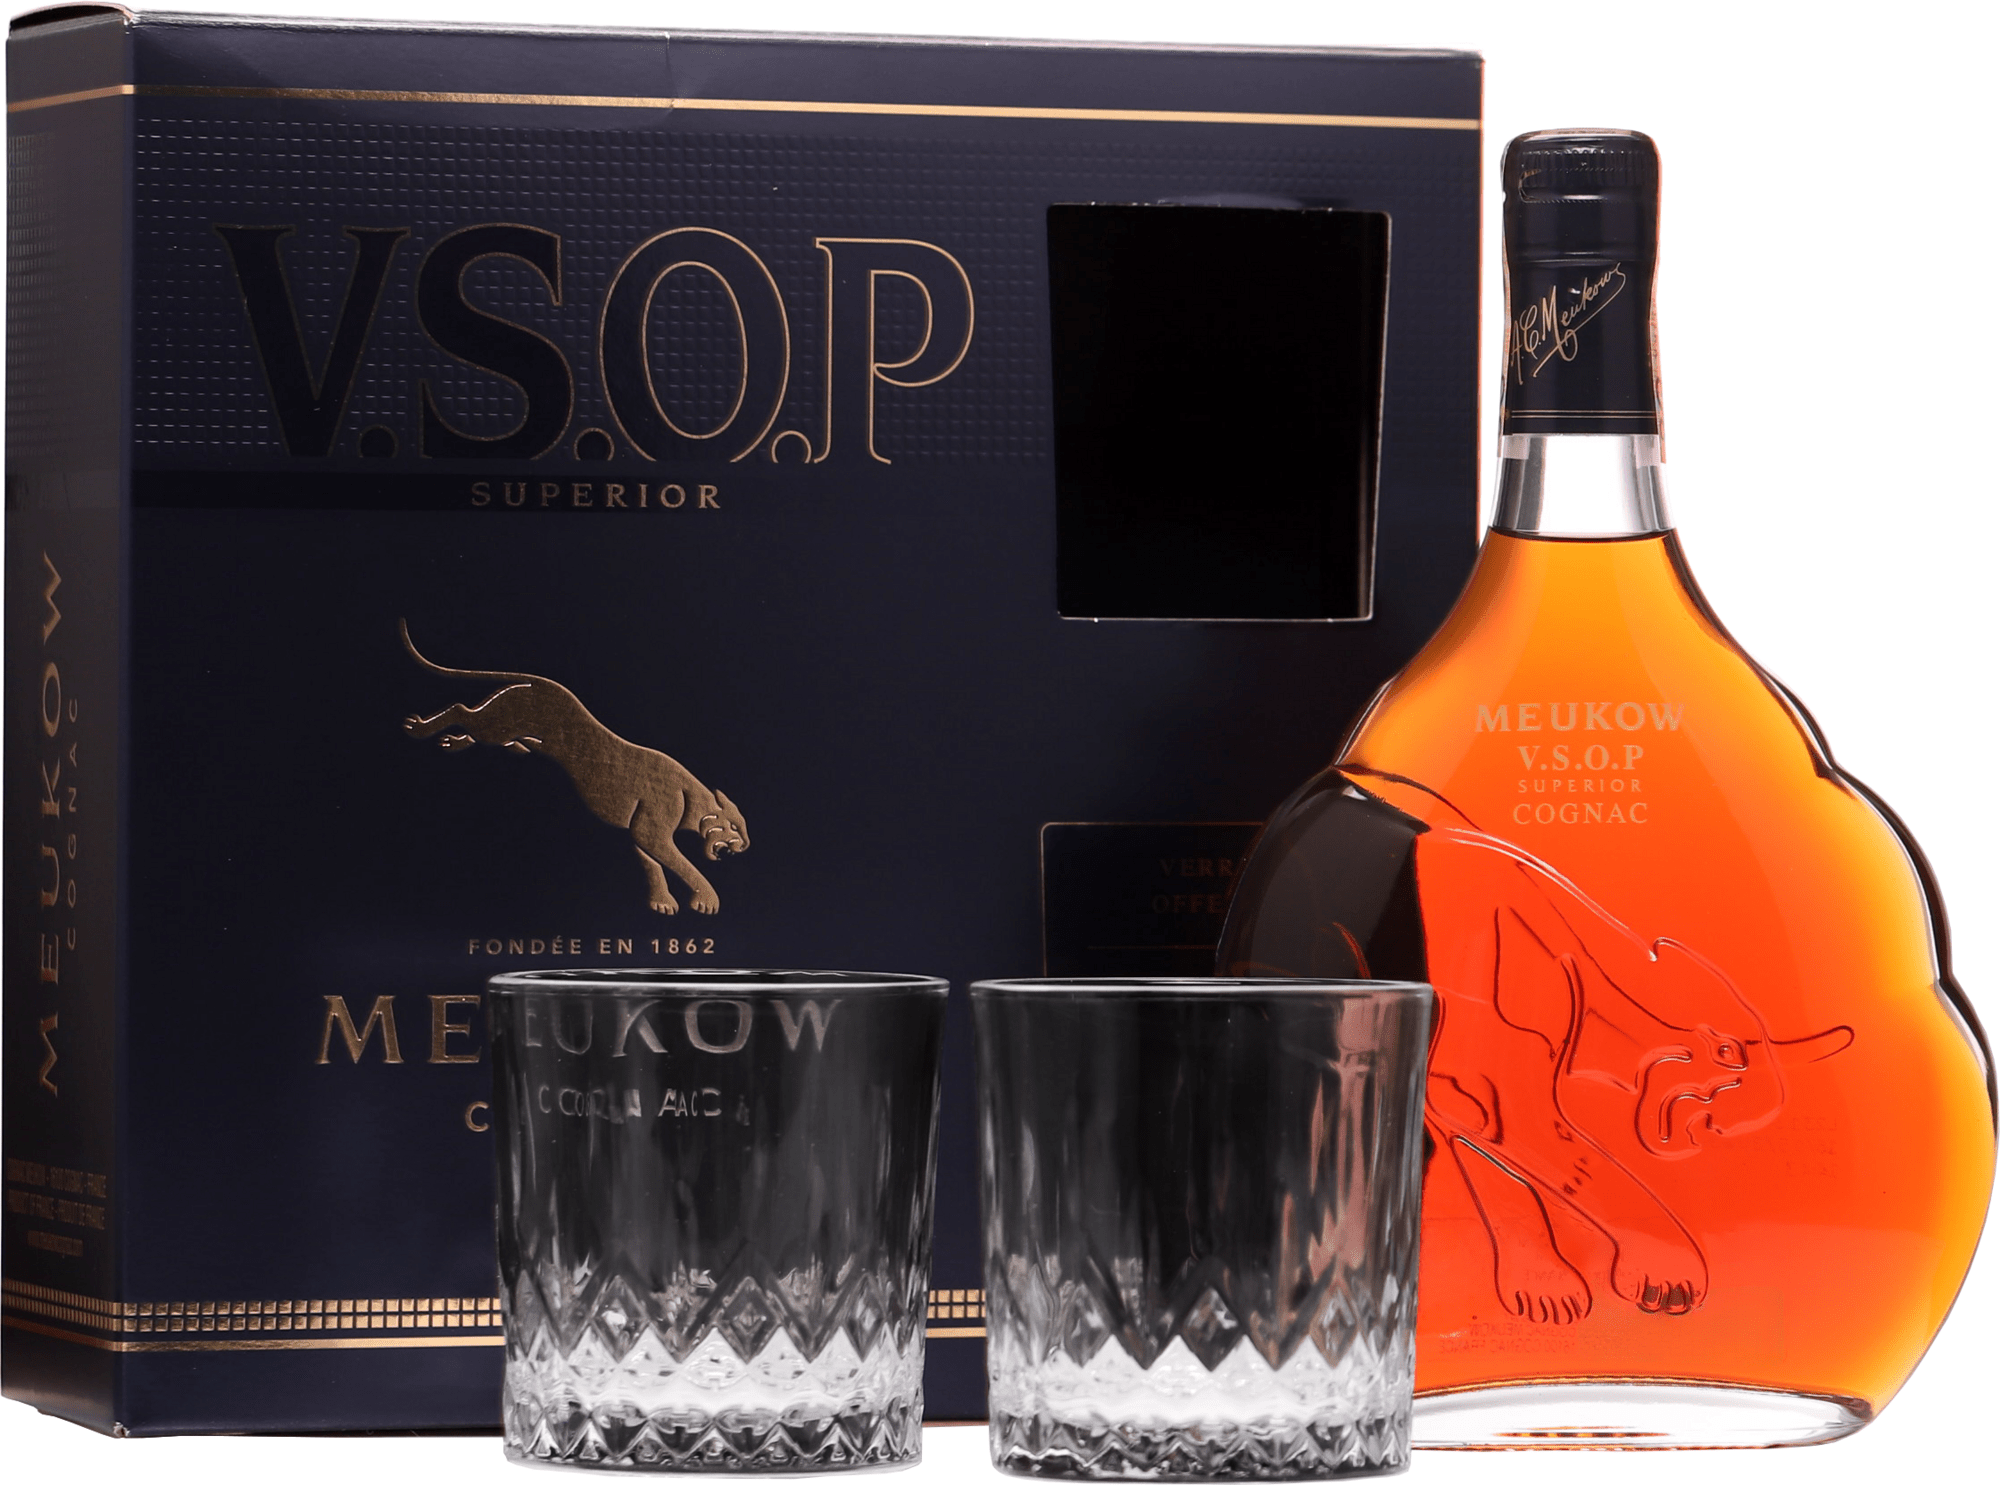 Meukow VSOP Superior + 2 sklenice 40% 0,7l